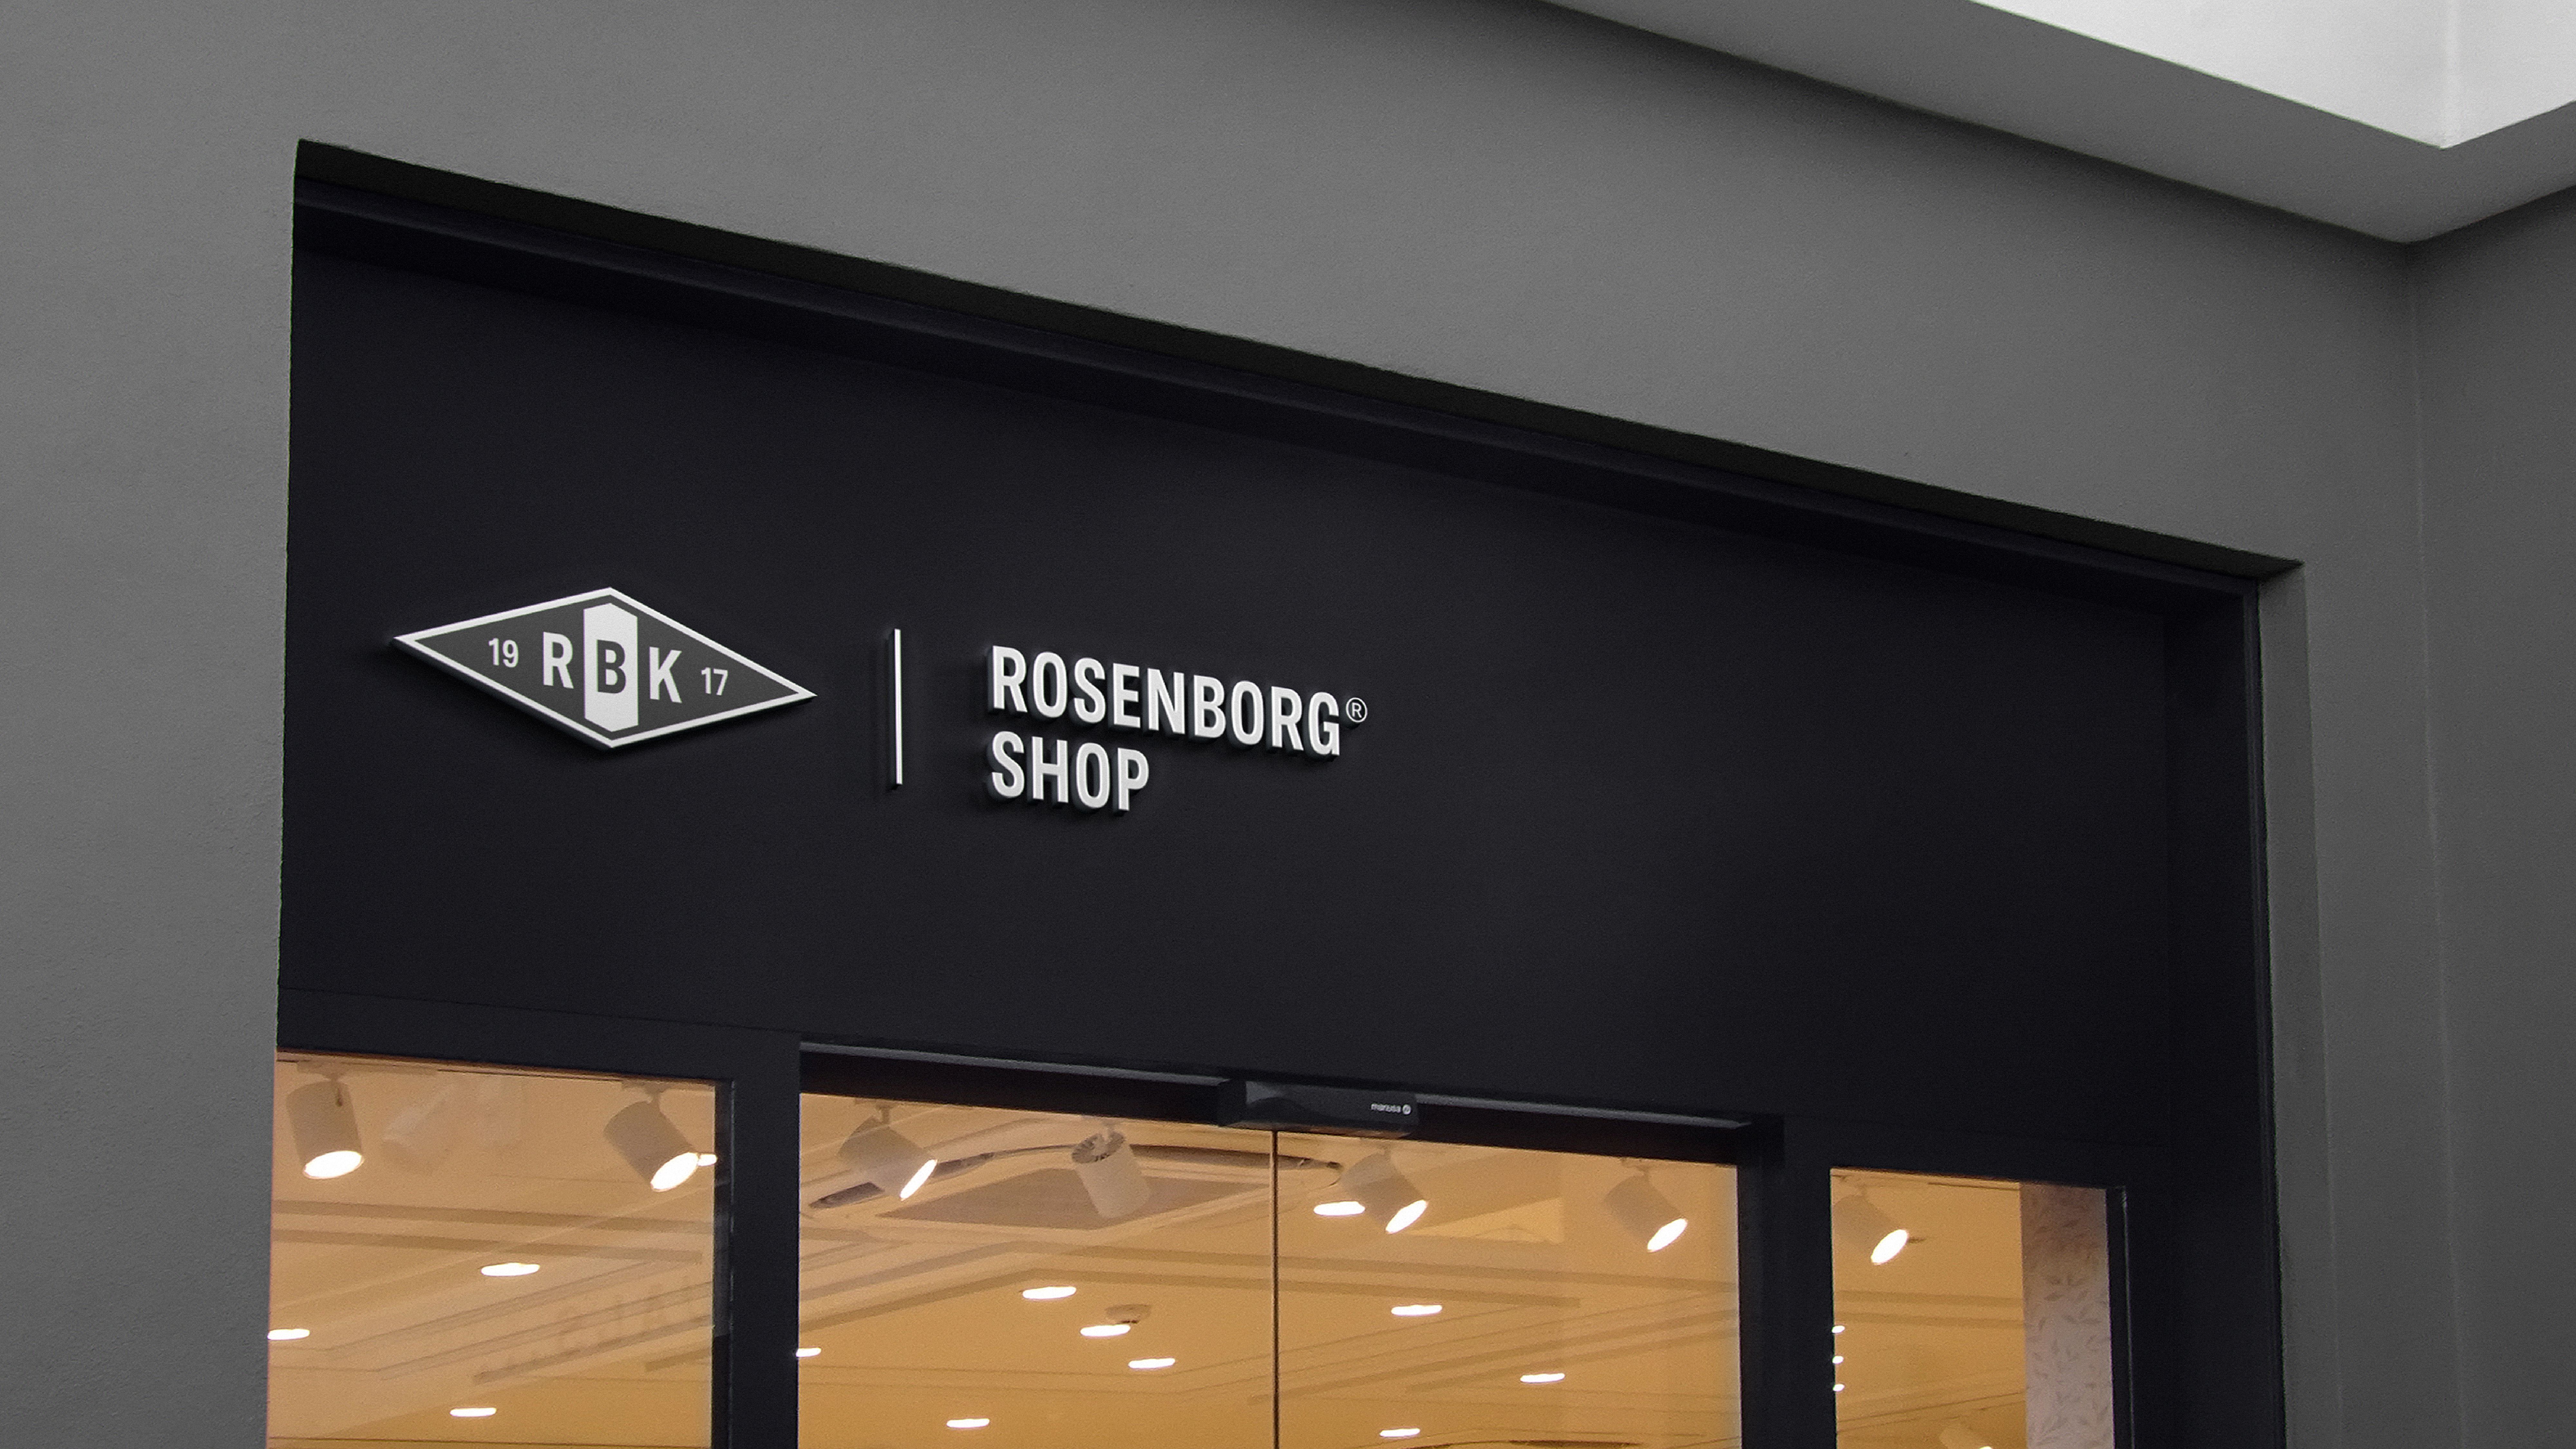 Rosenborg shop